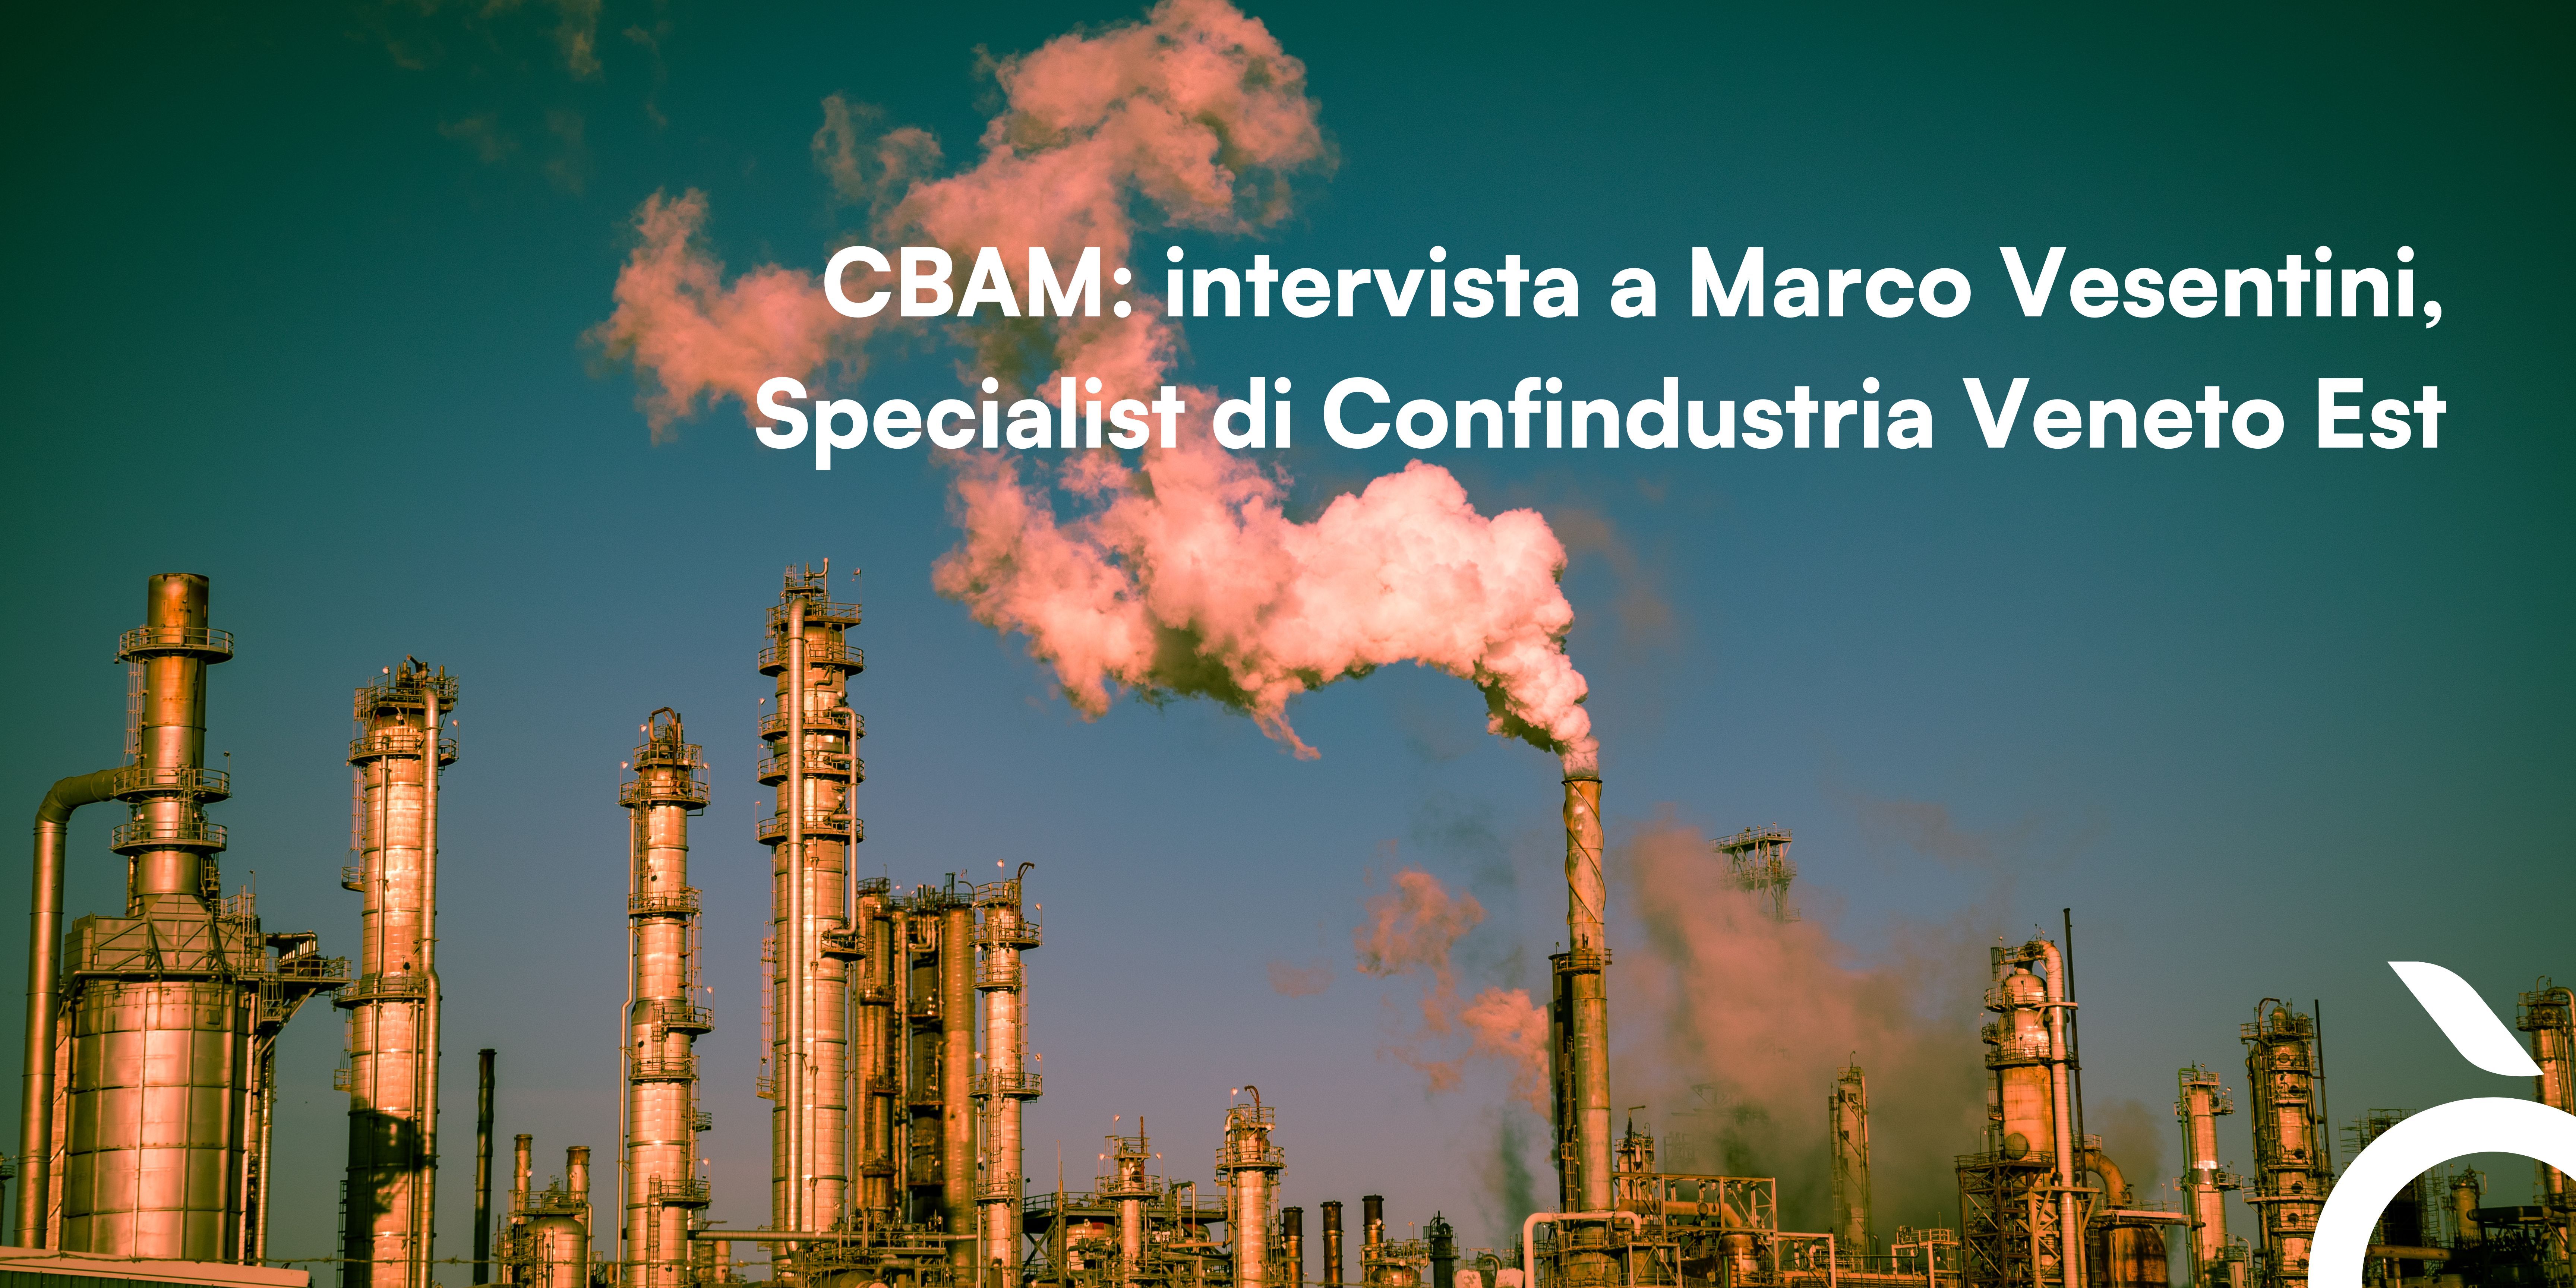 CBAM: intervista a Marco Vesentini, Specialist di Confindustria Veneto Est